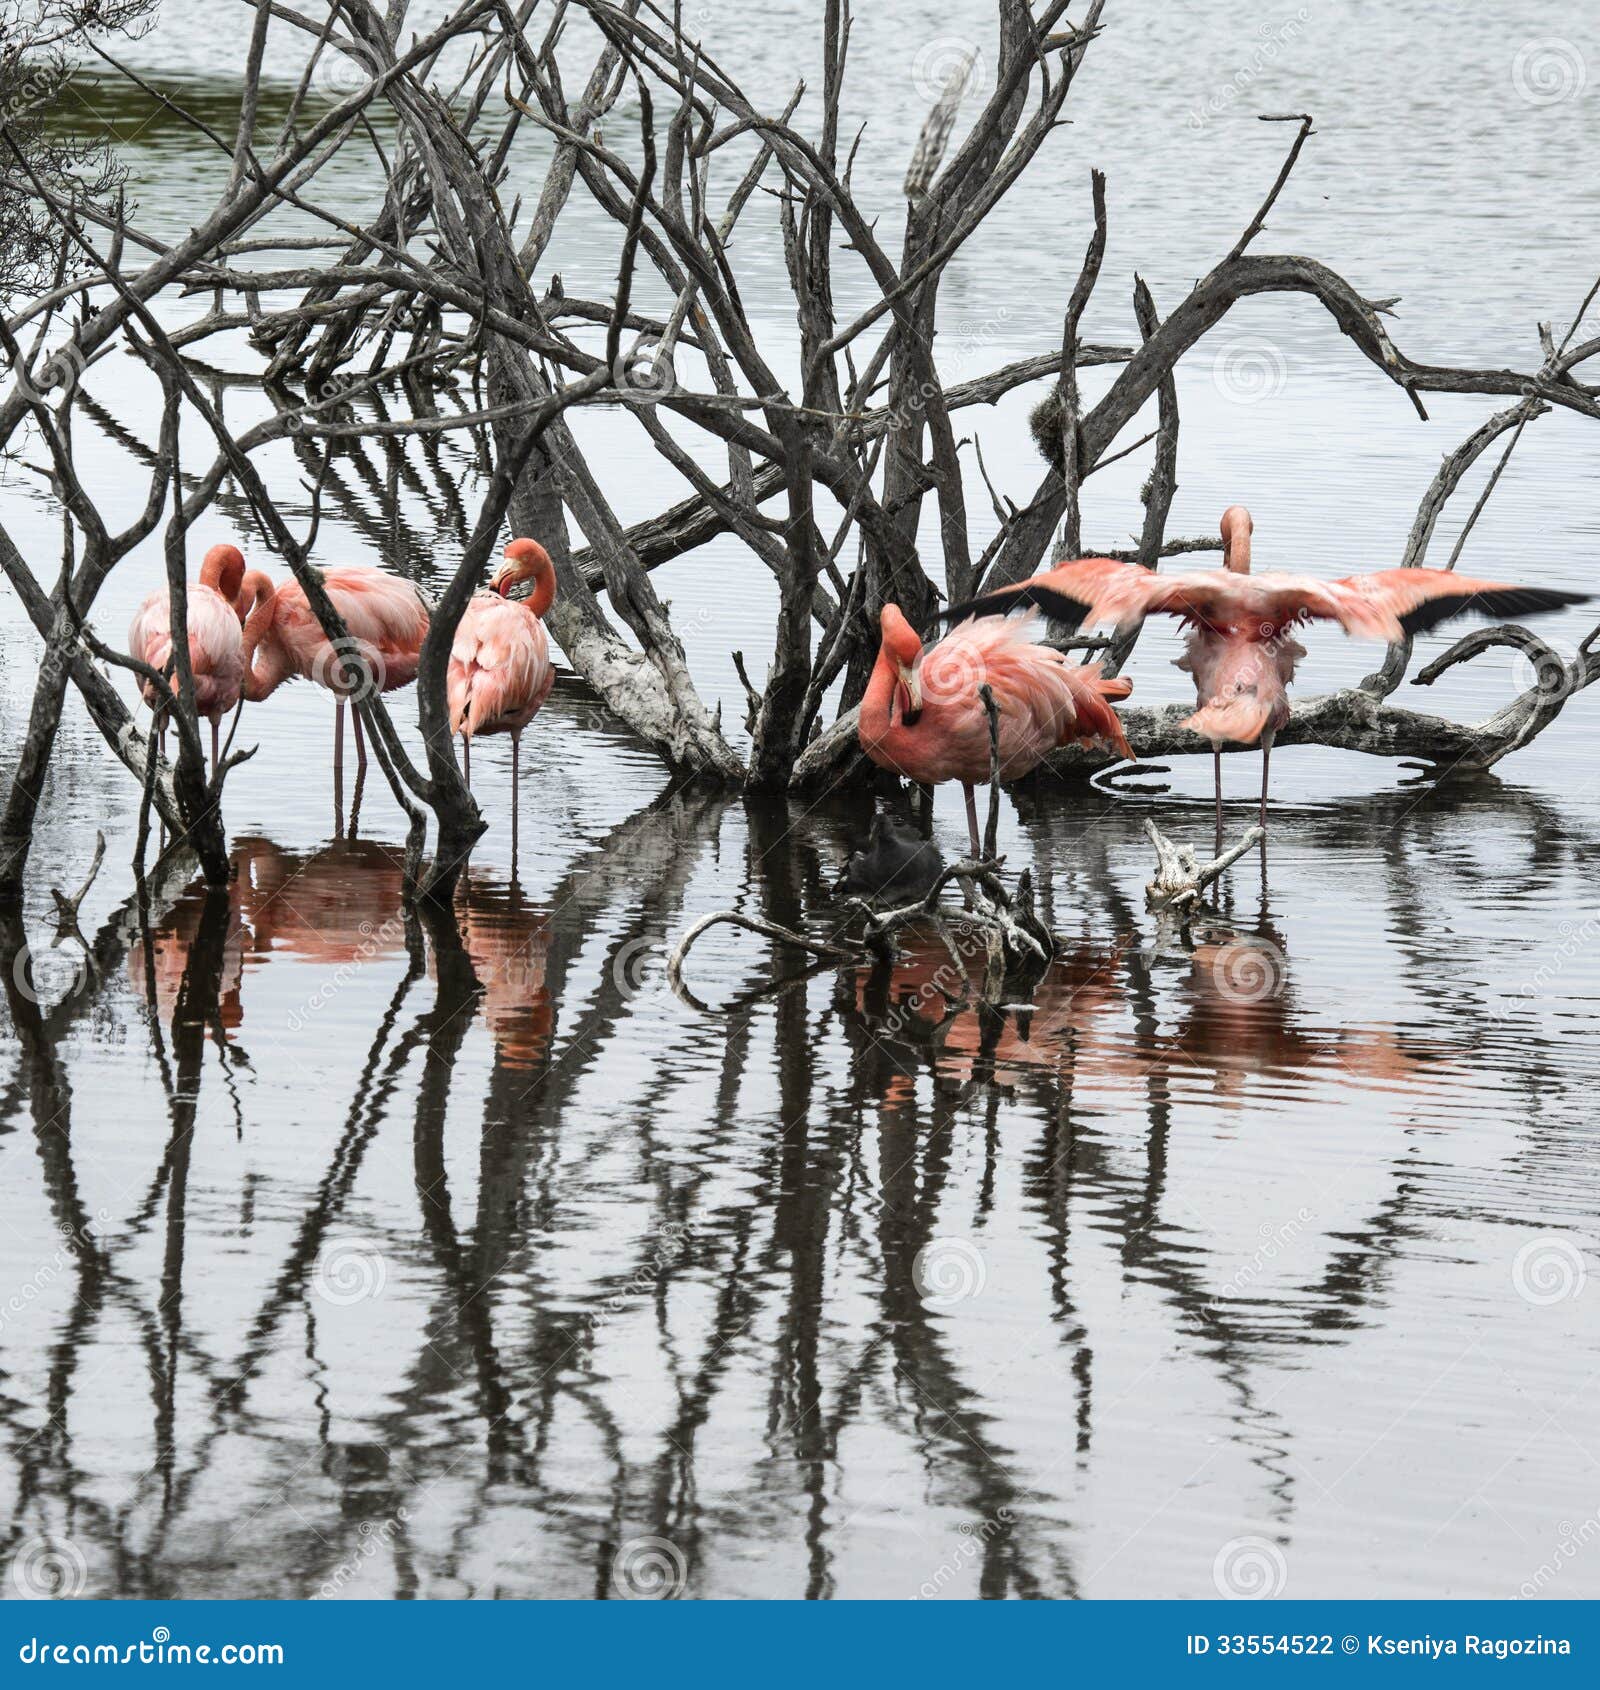 flamingos, galapagos islands